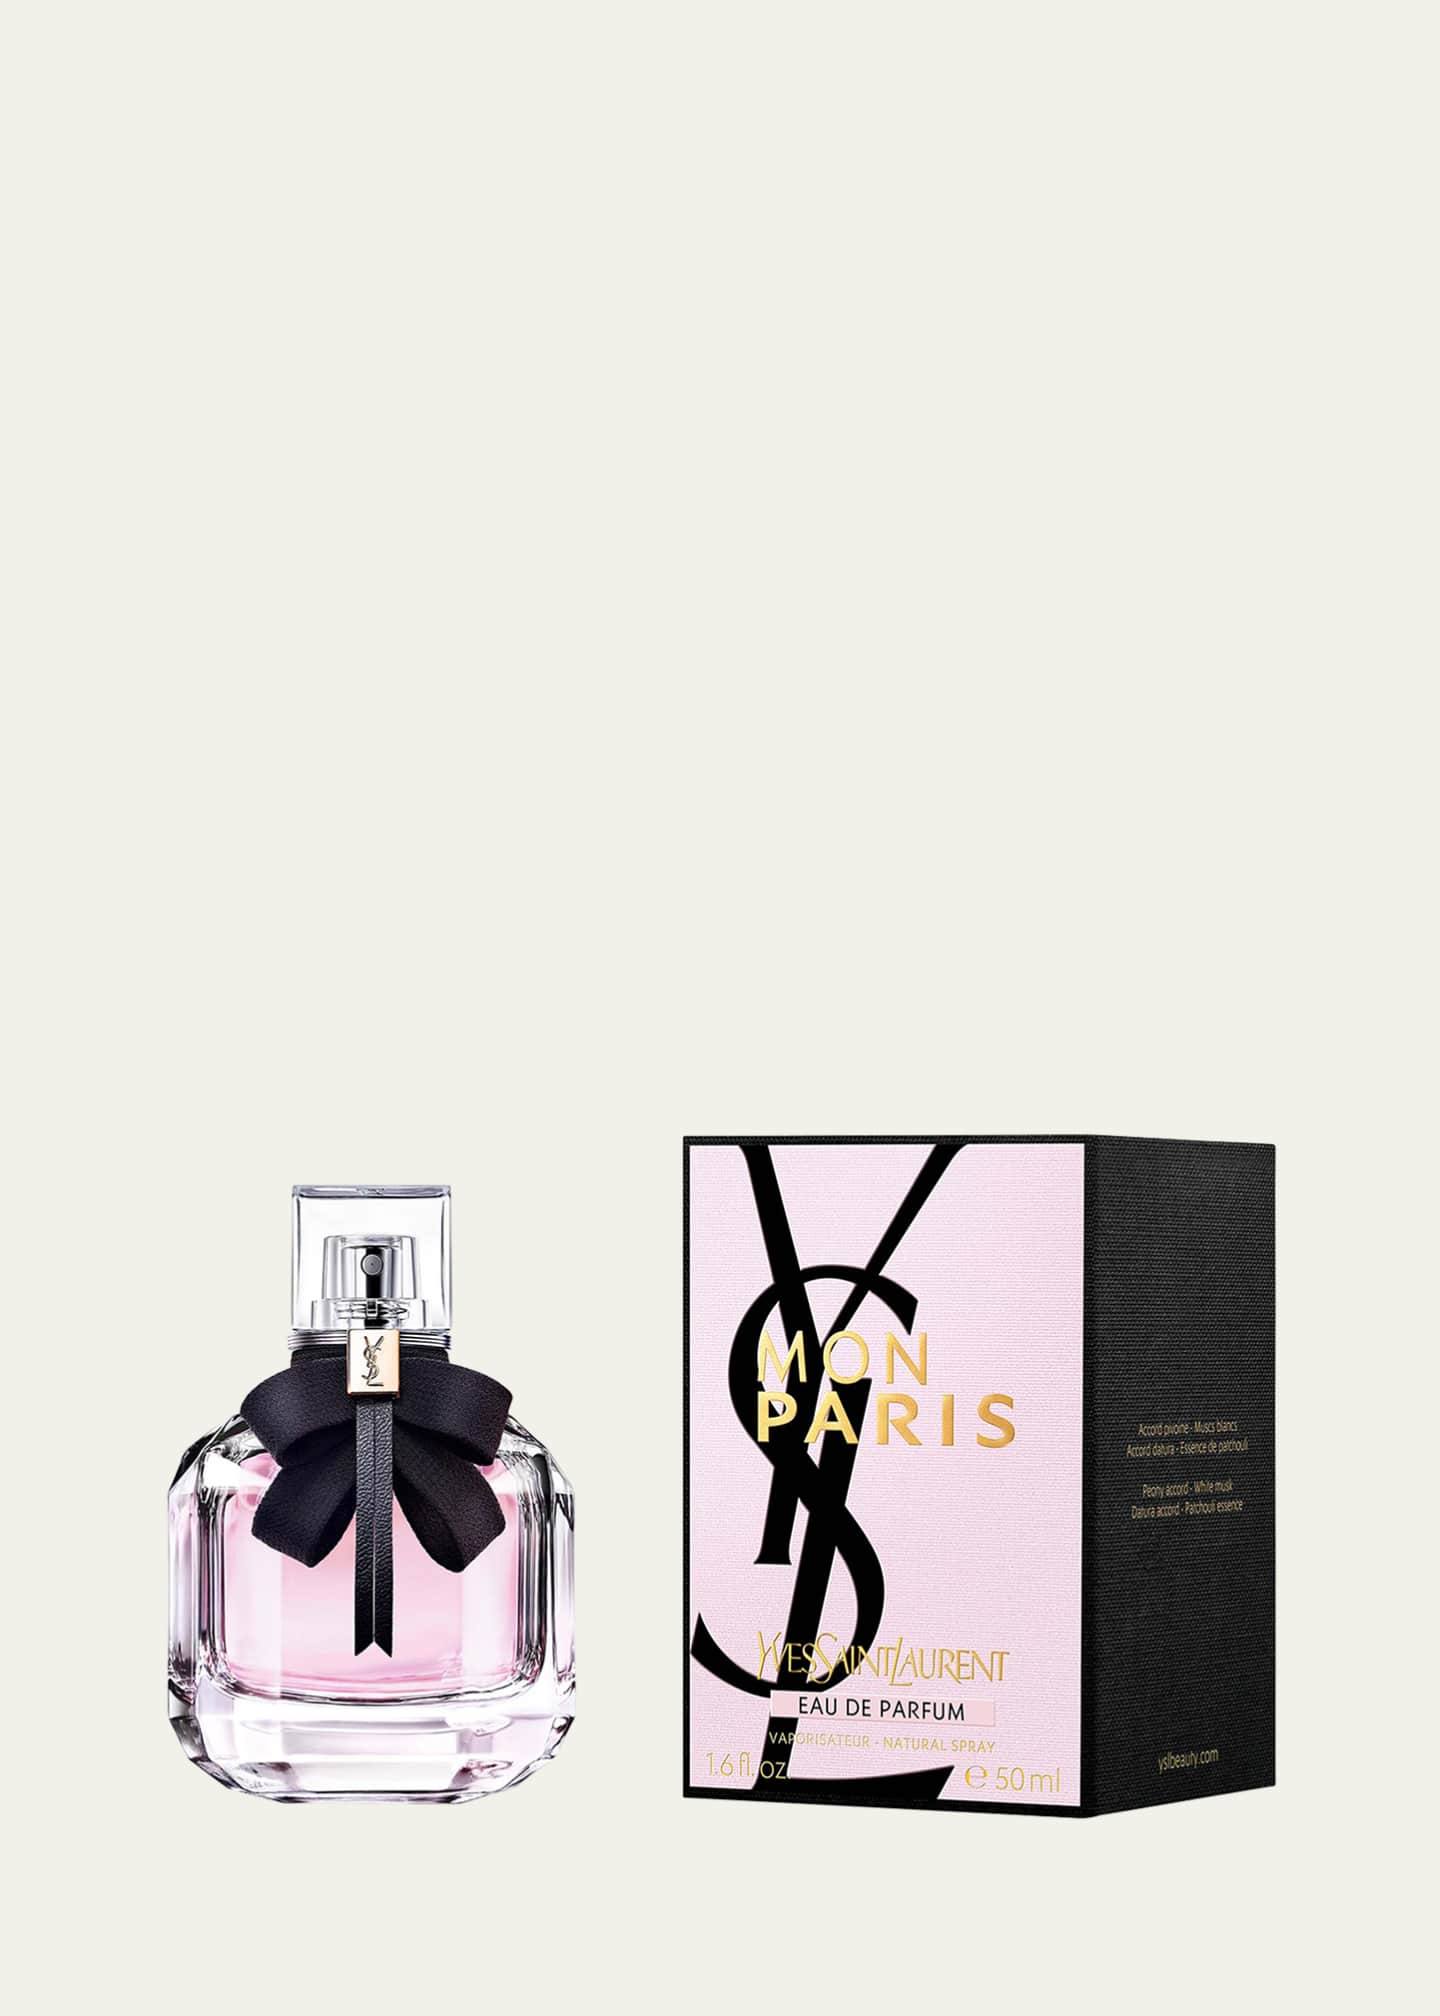 Mon Paris by Yves Saint Laurent 5 oz Eau de Parfum Spray / Women